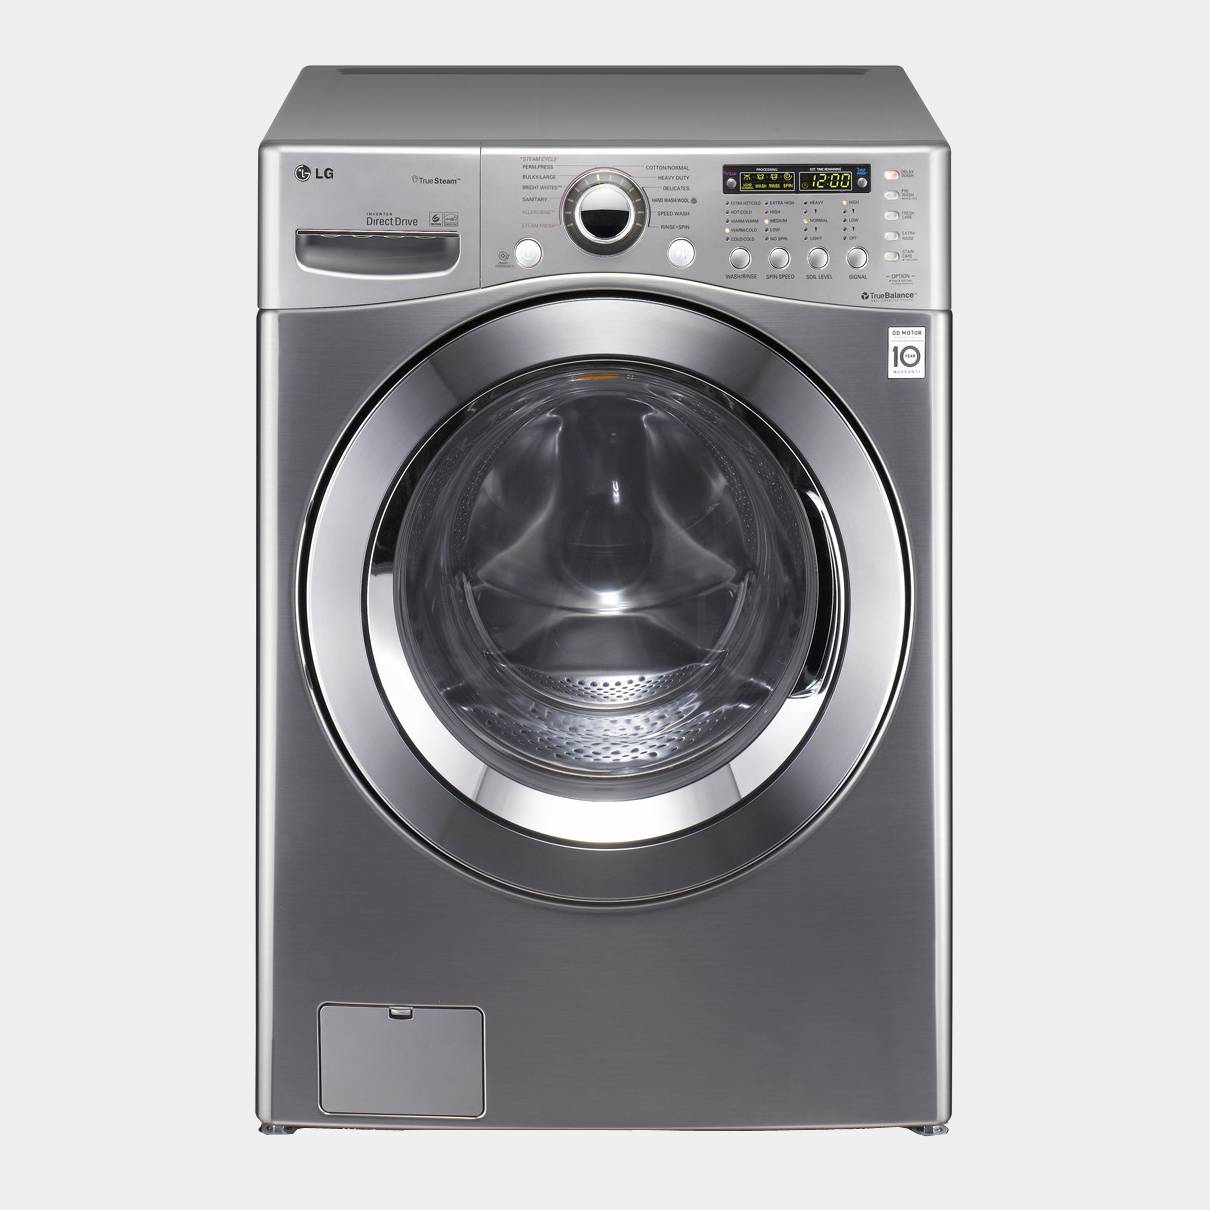 LG F1255fds7 inox lavadora de 15kg 1200rpm